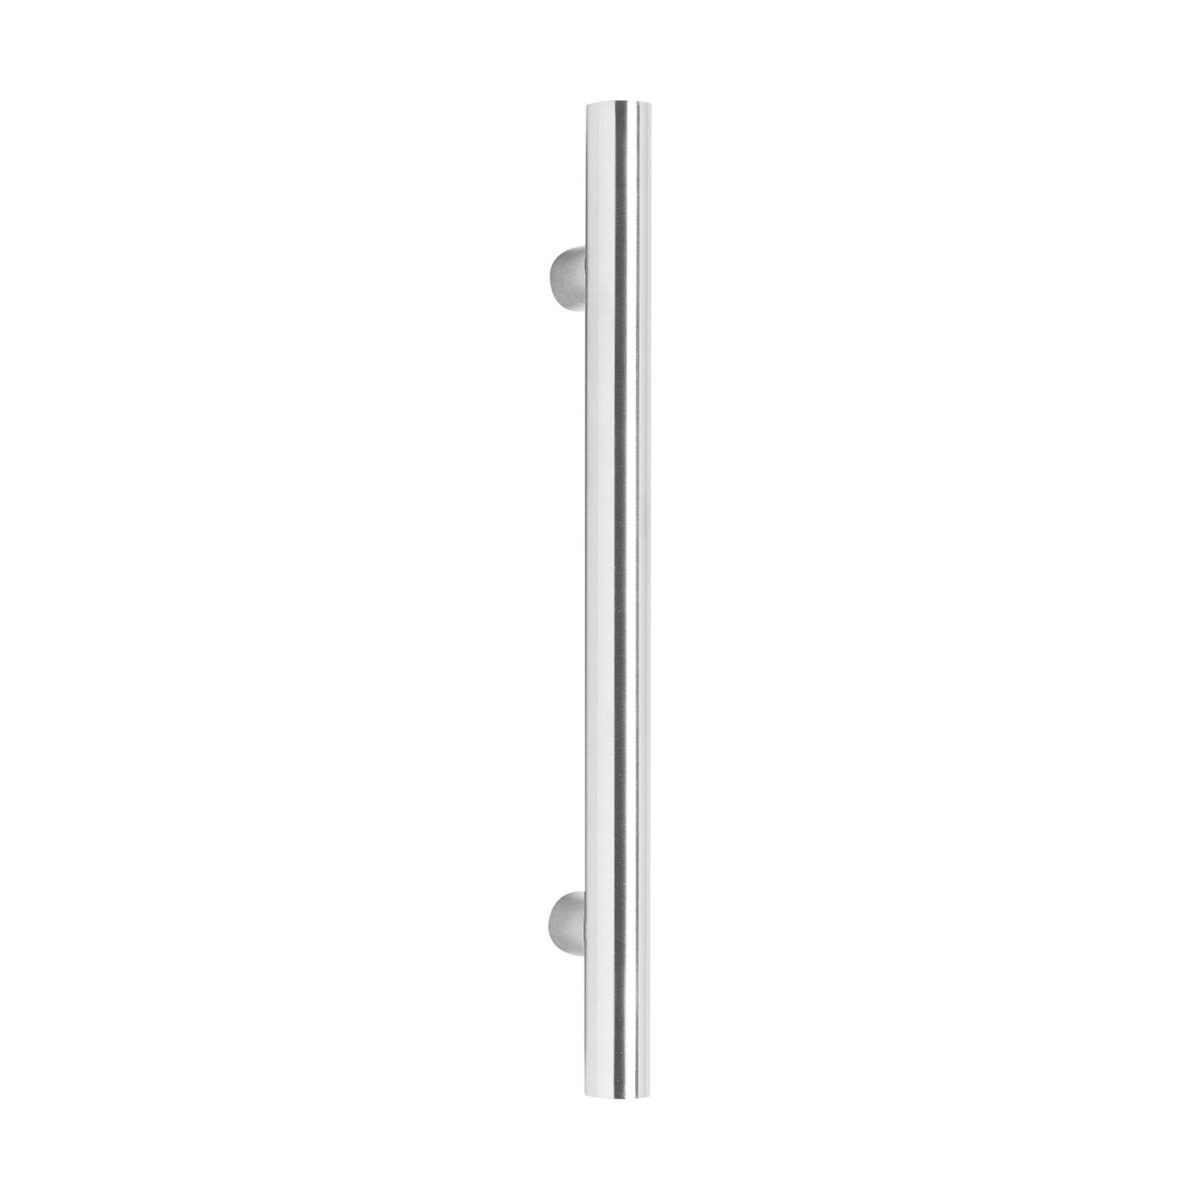 Intersteel Door handles 700 mm T shape brushed stainless steel